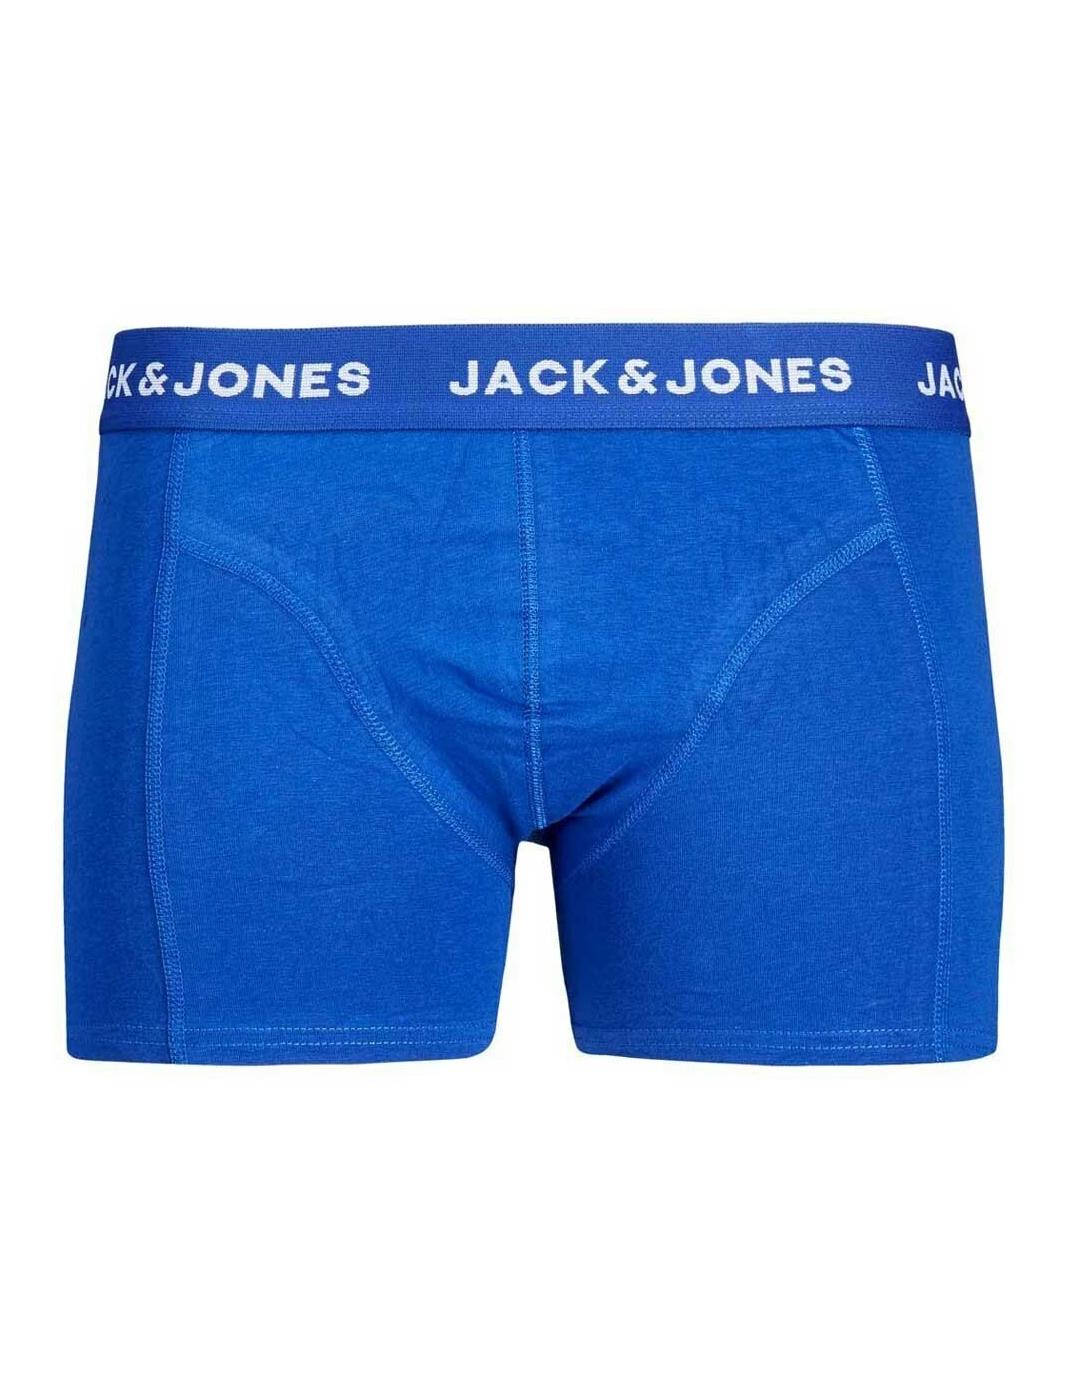 Intimo Jack&Jones pack5 Noos para hombre -y